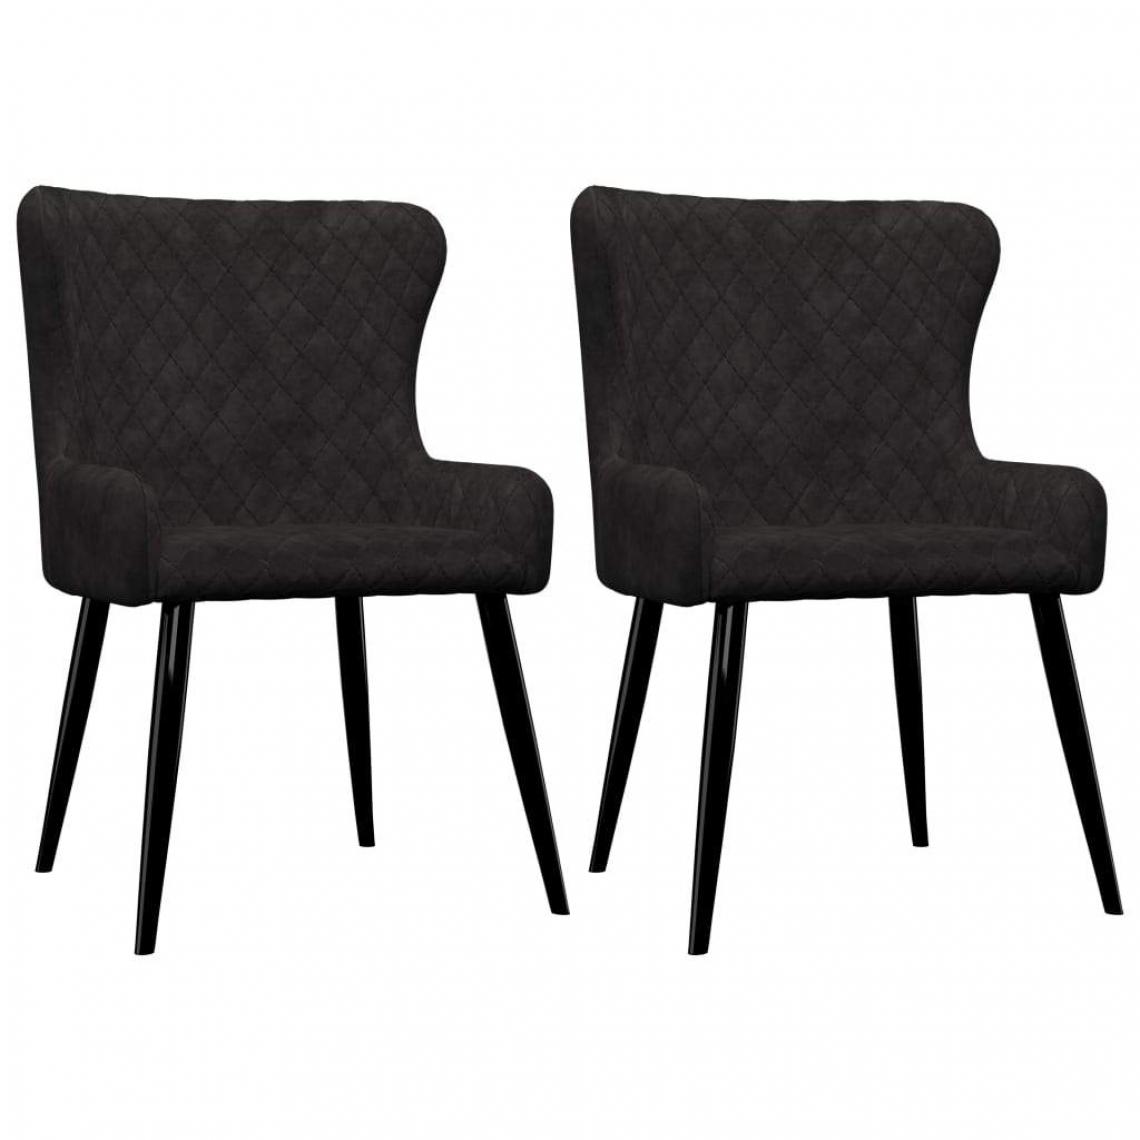 Decoshop26 - Lot de 2 chaises de salle à manger cuisine design moderne velours noir CDS020888 - Chaises